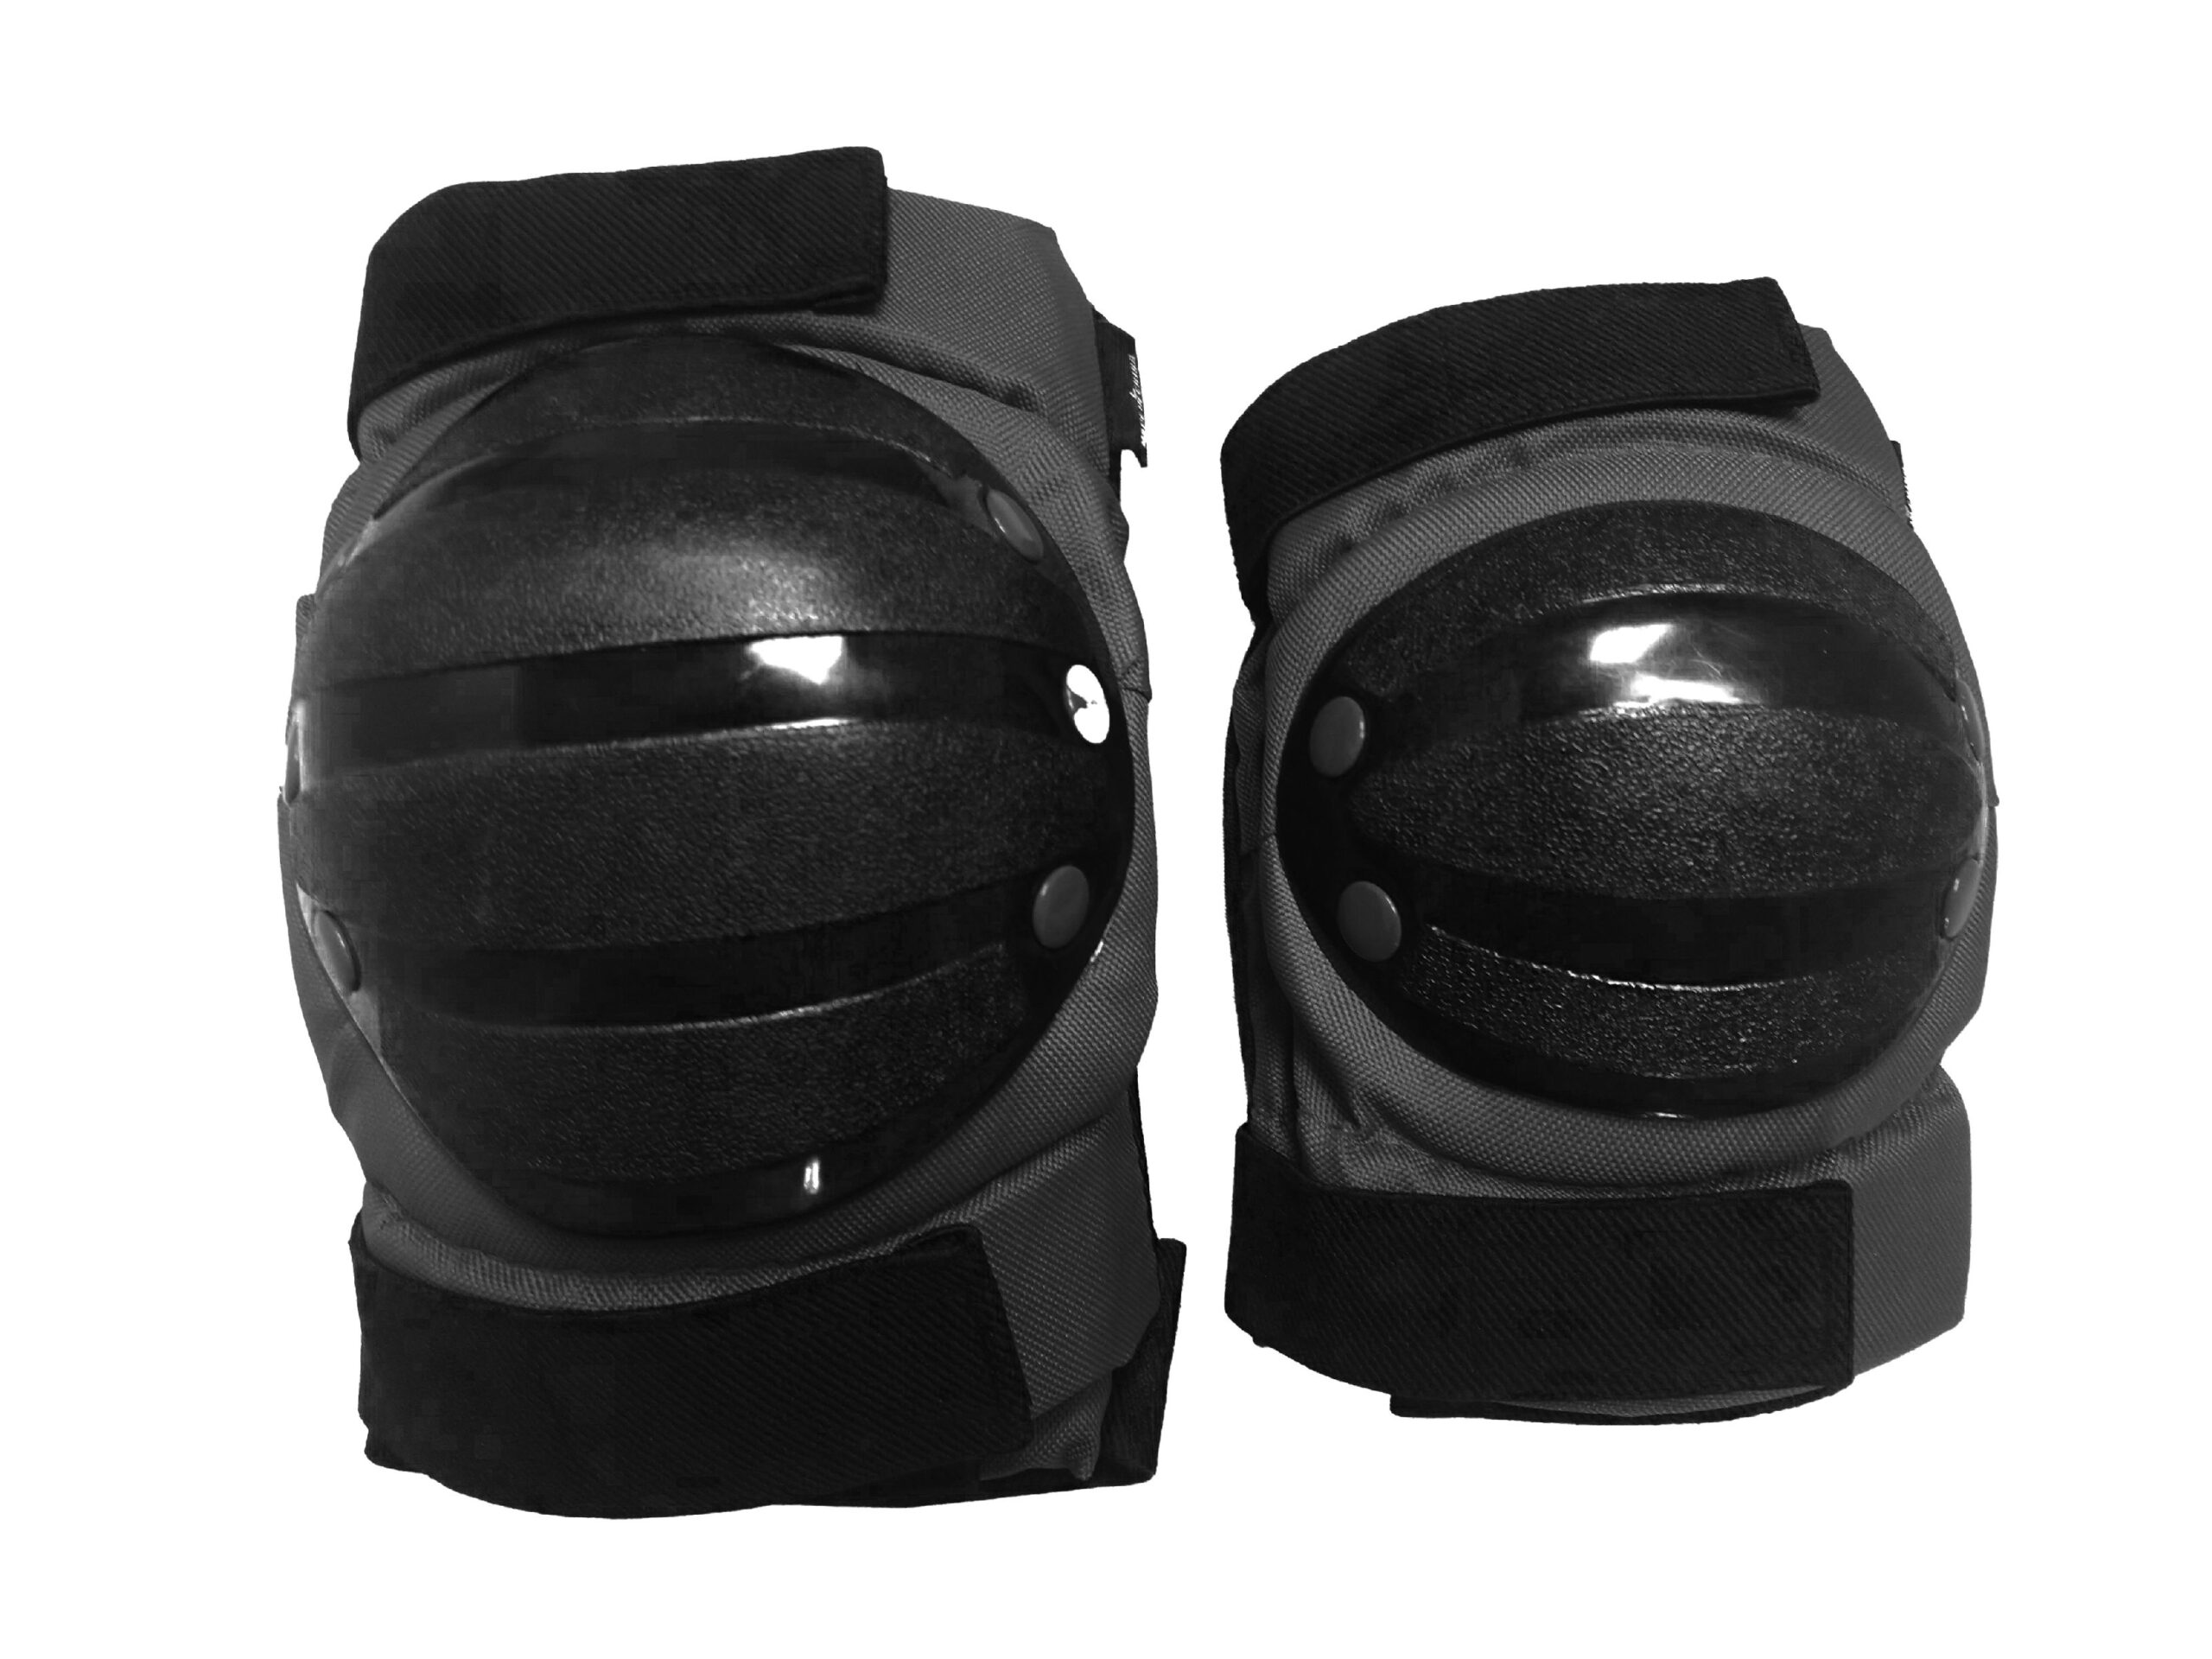 GTPADLZ Greytek Large Black Elbow & Knee Pad Set